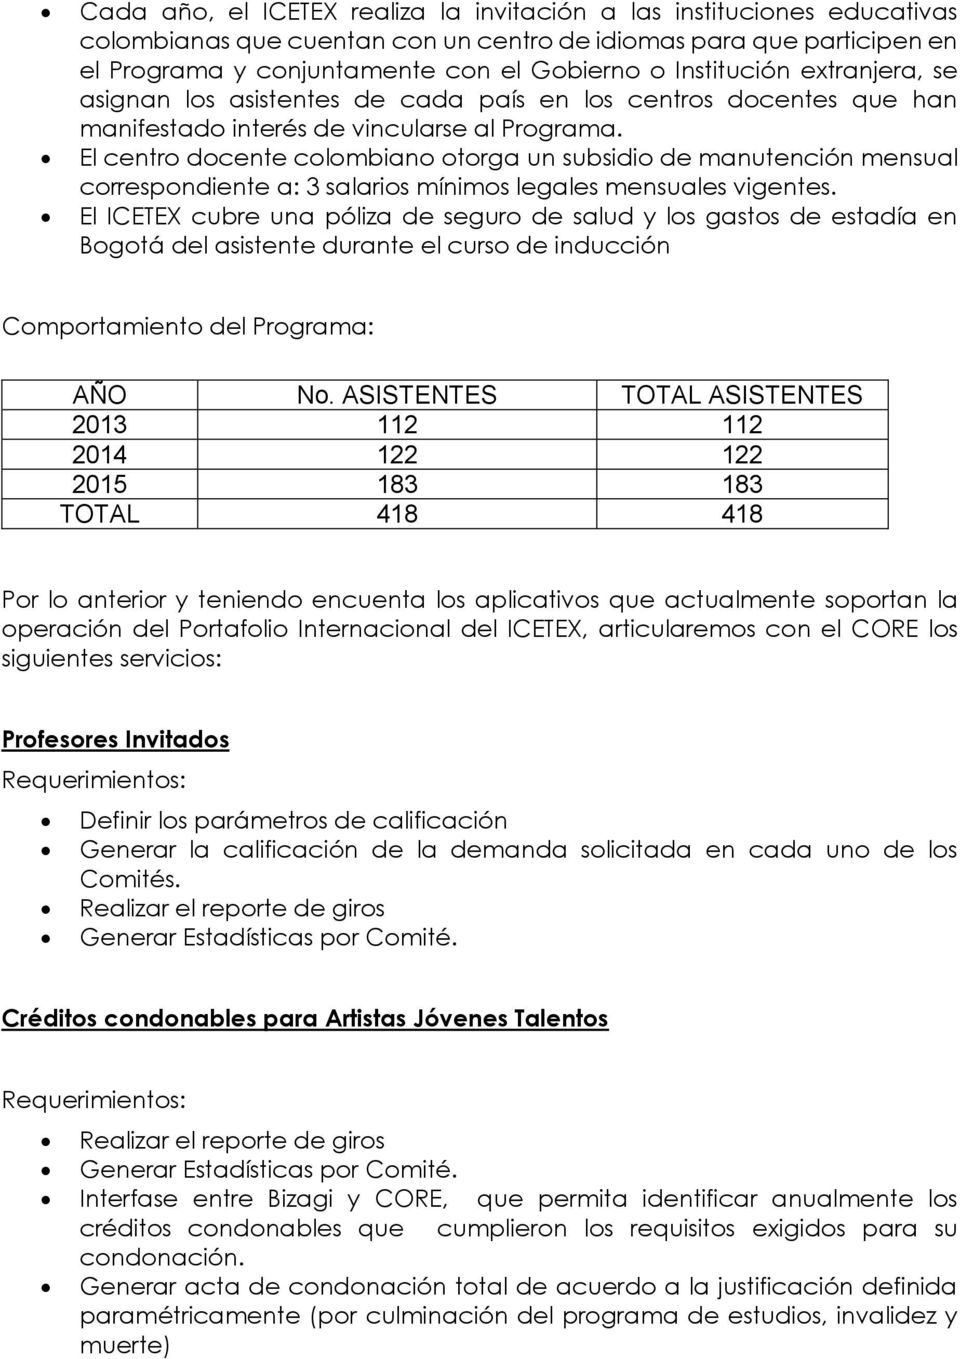 El centro docente colombiano otorga un subsidio de manutención mensual correspondiente a: 3 salarios mínimos legales mensuales vigentes.